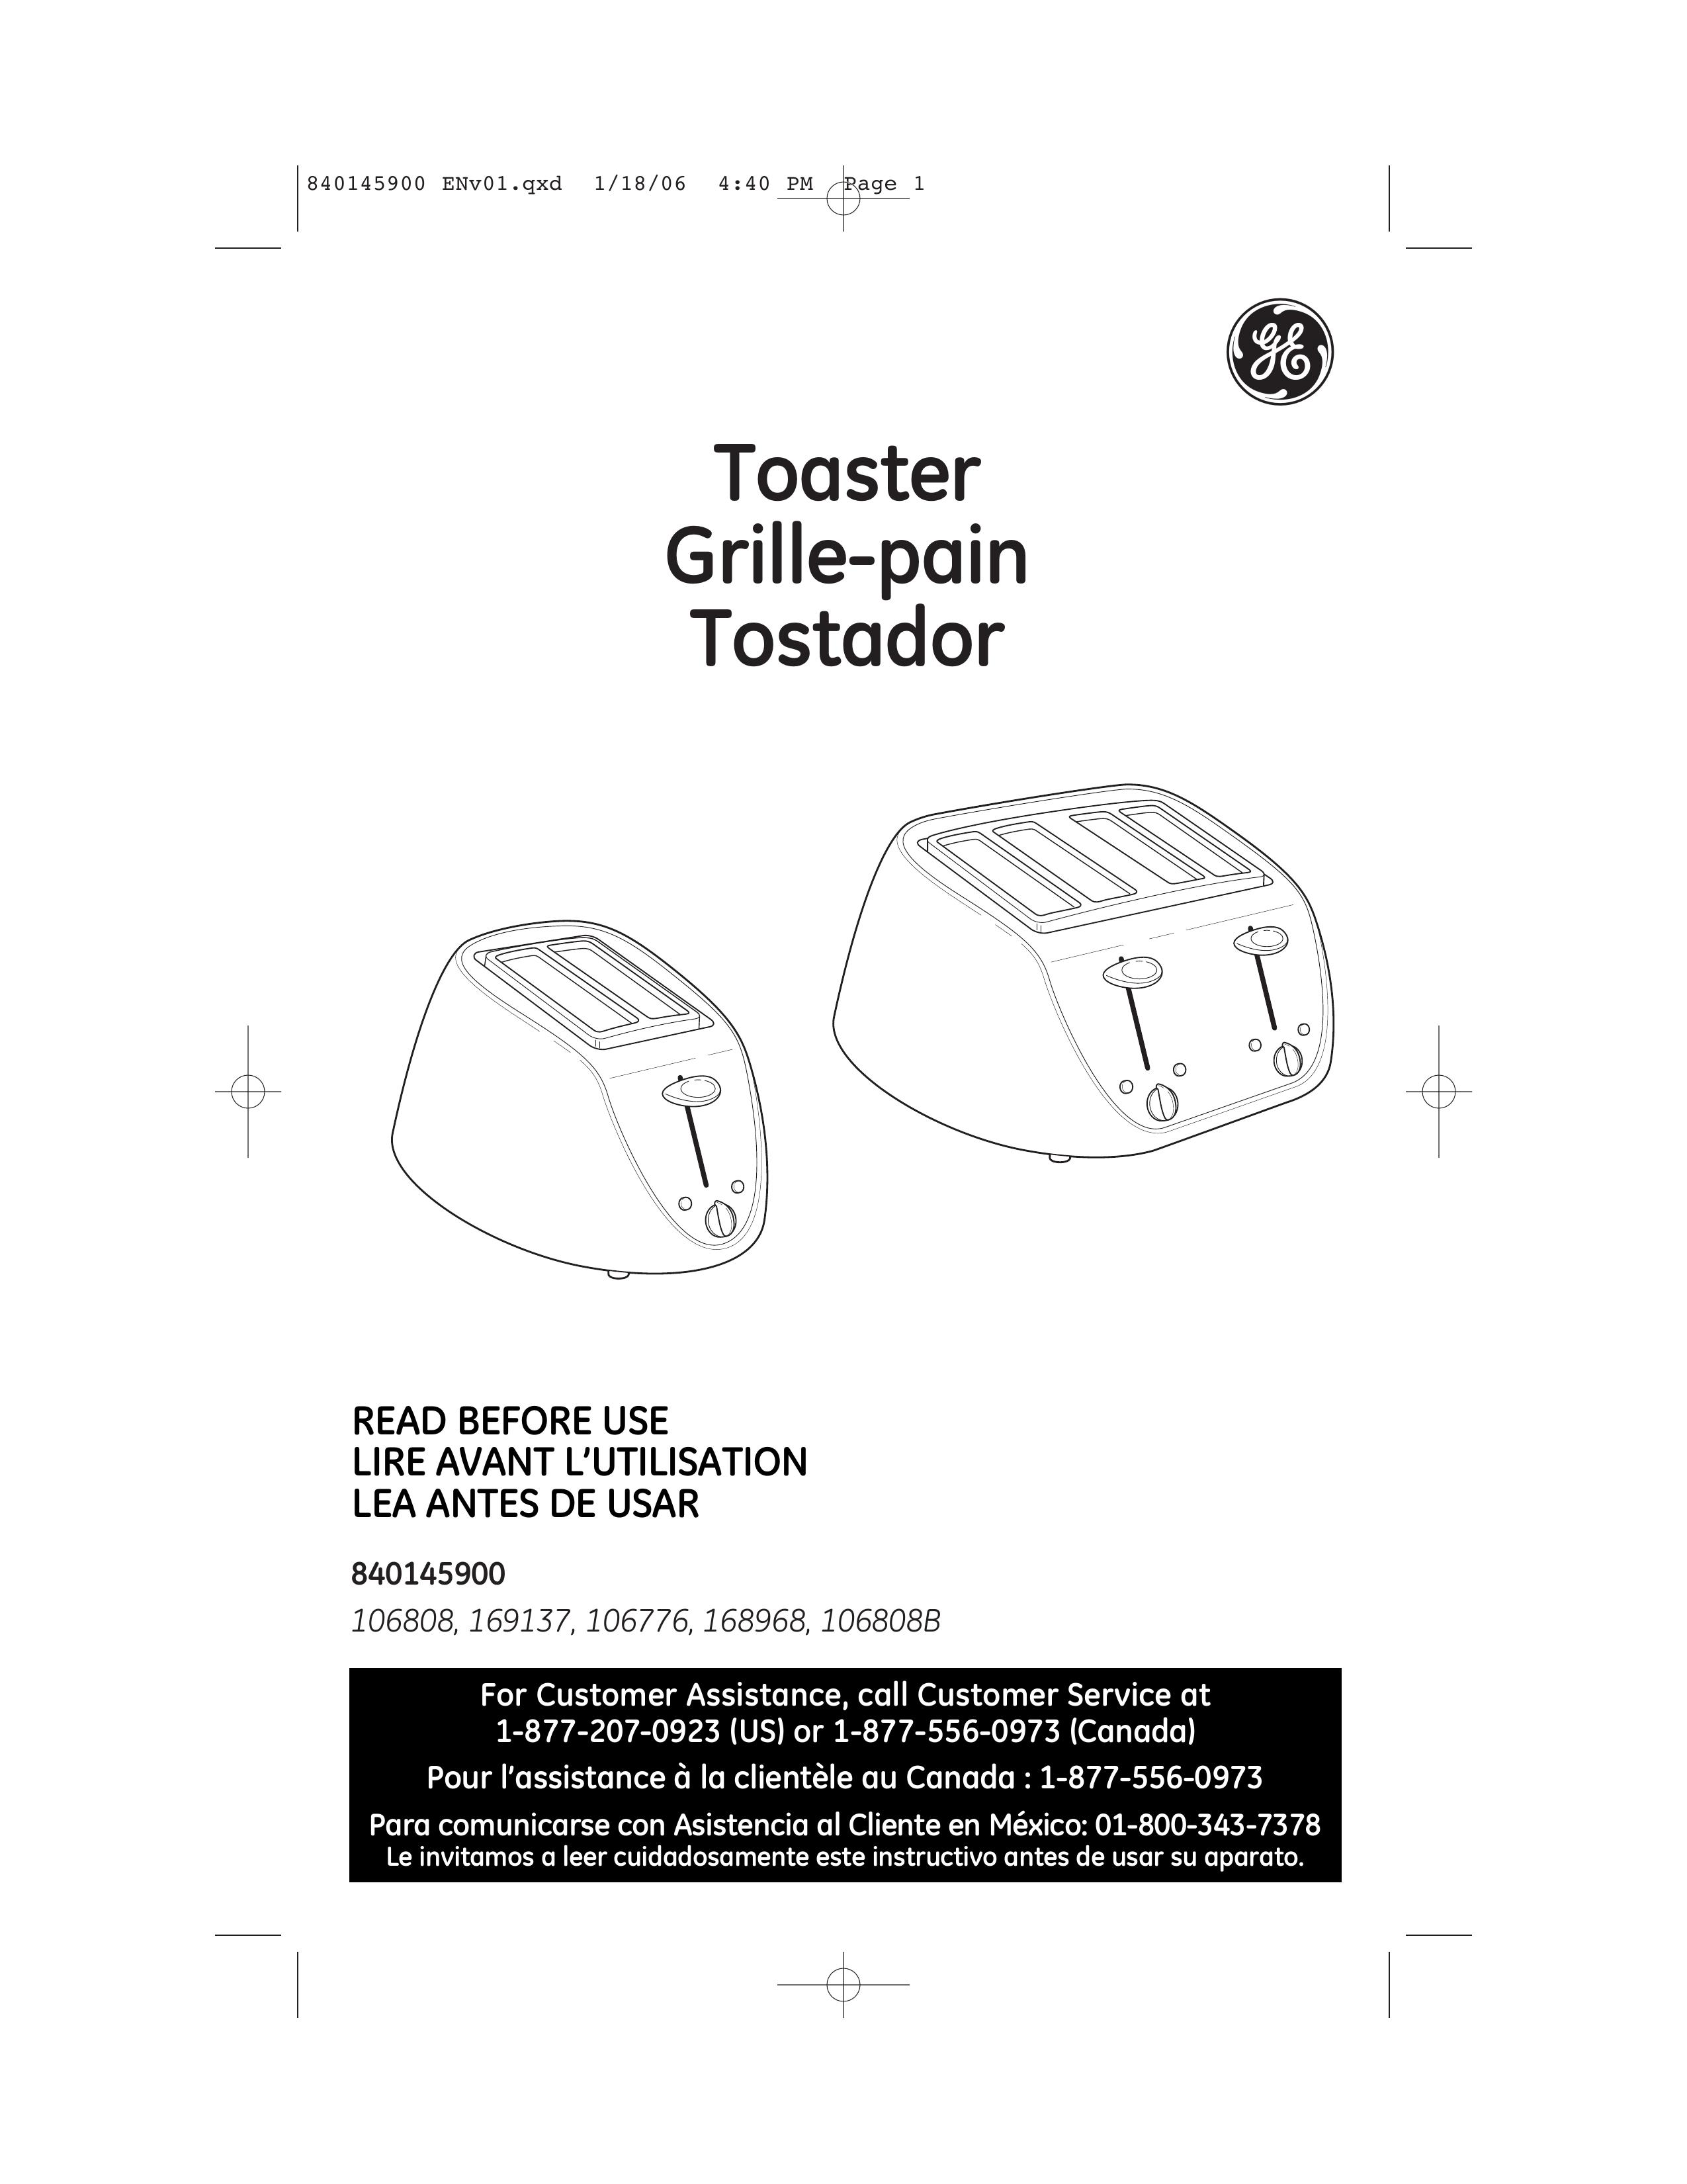 GE 168968 Toaster User Manual